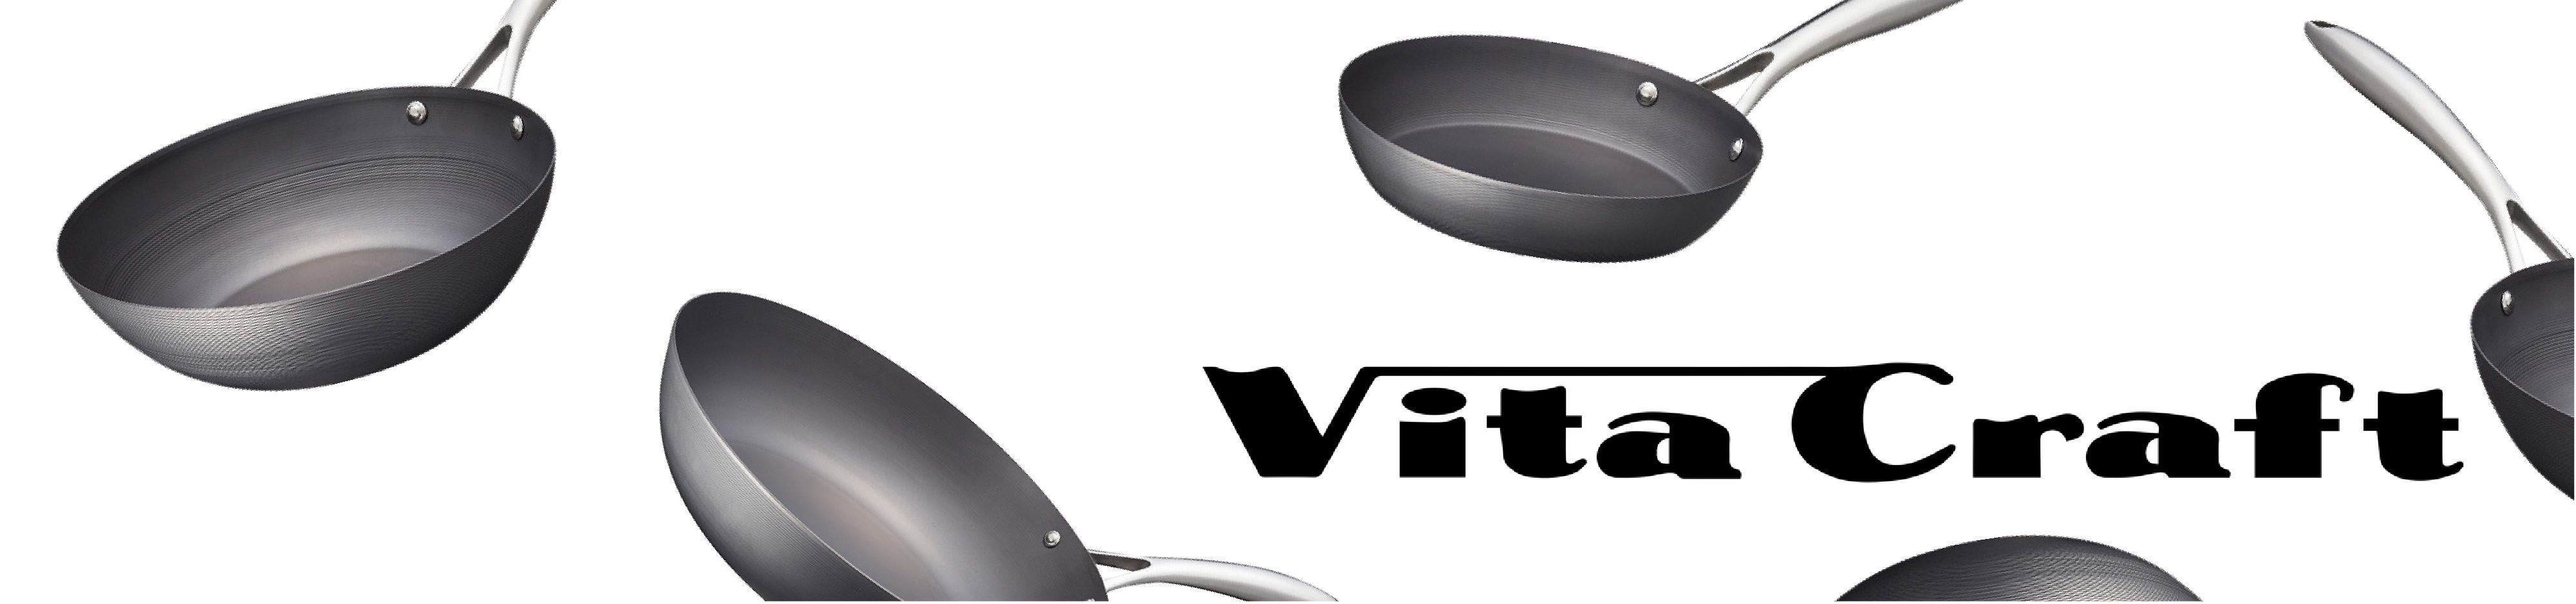 Vita Craft - Chảo thép carbon